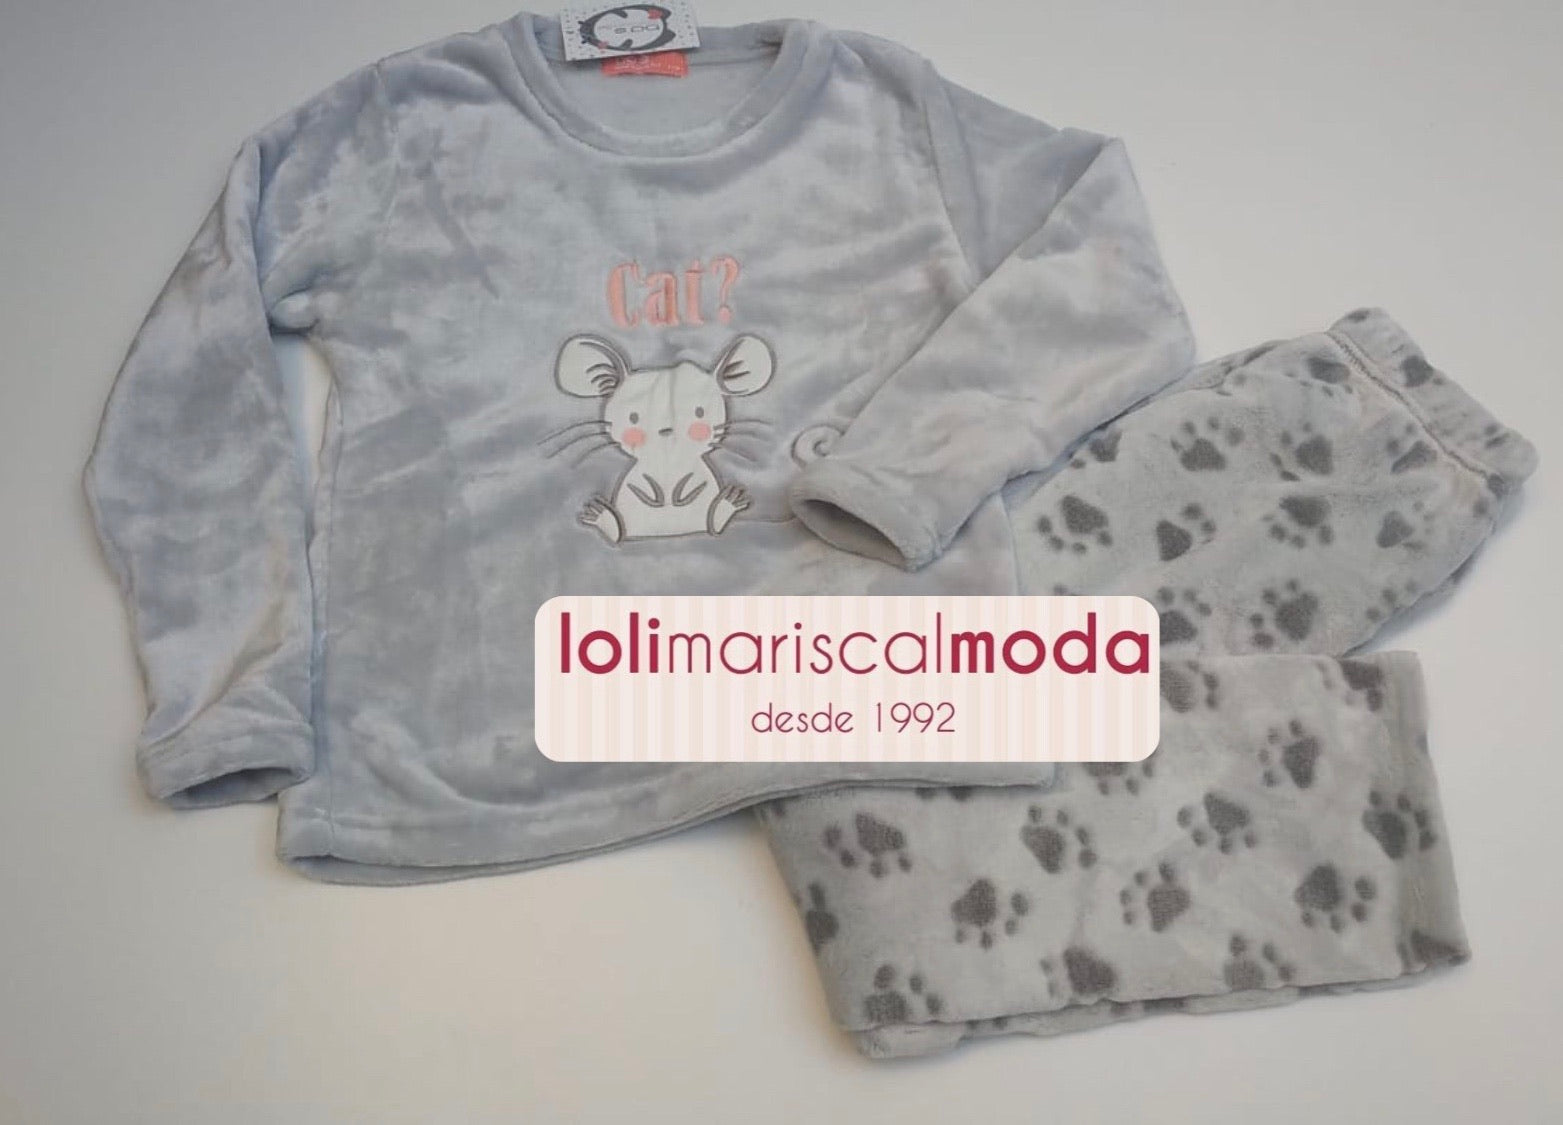 Pijamas Invierno Ratón lolimariscalmoda 16.95